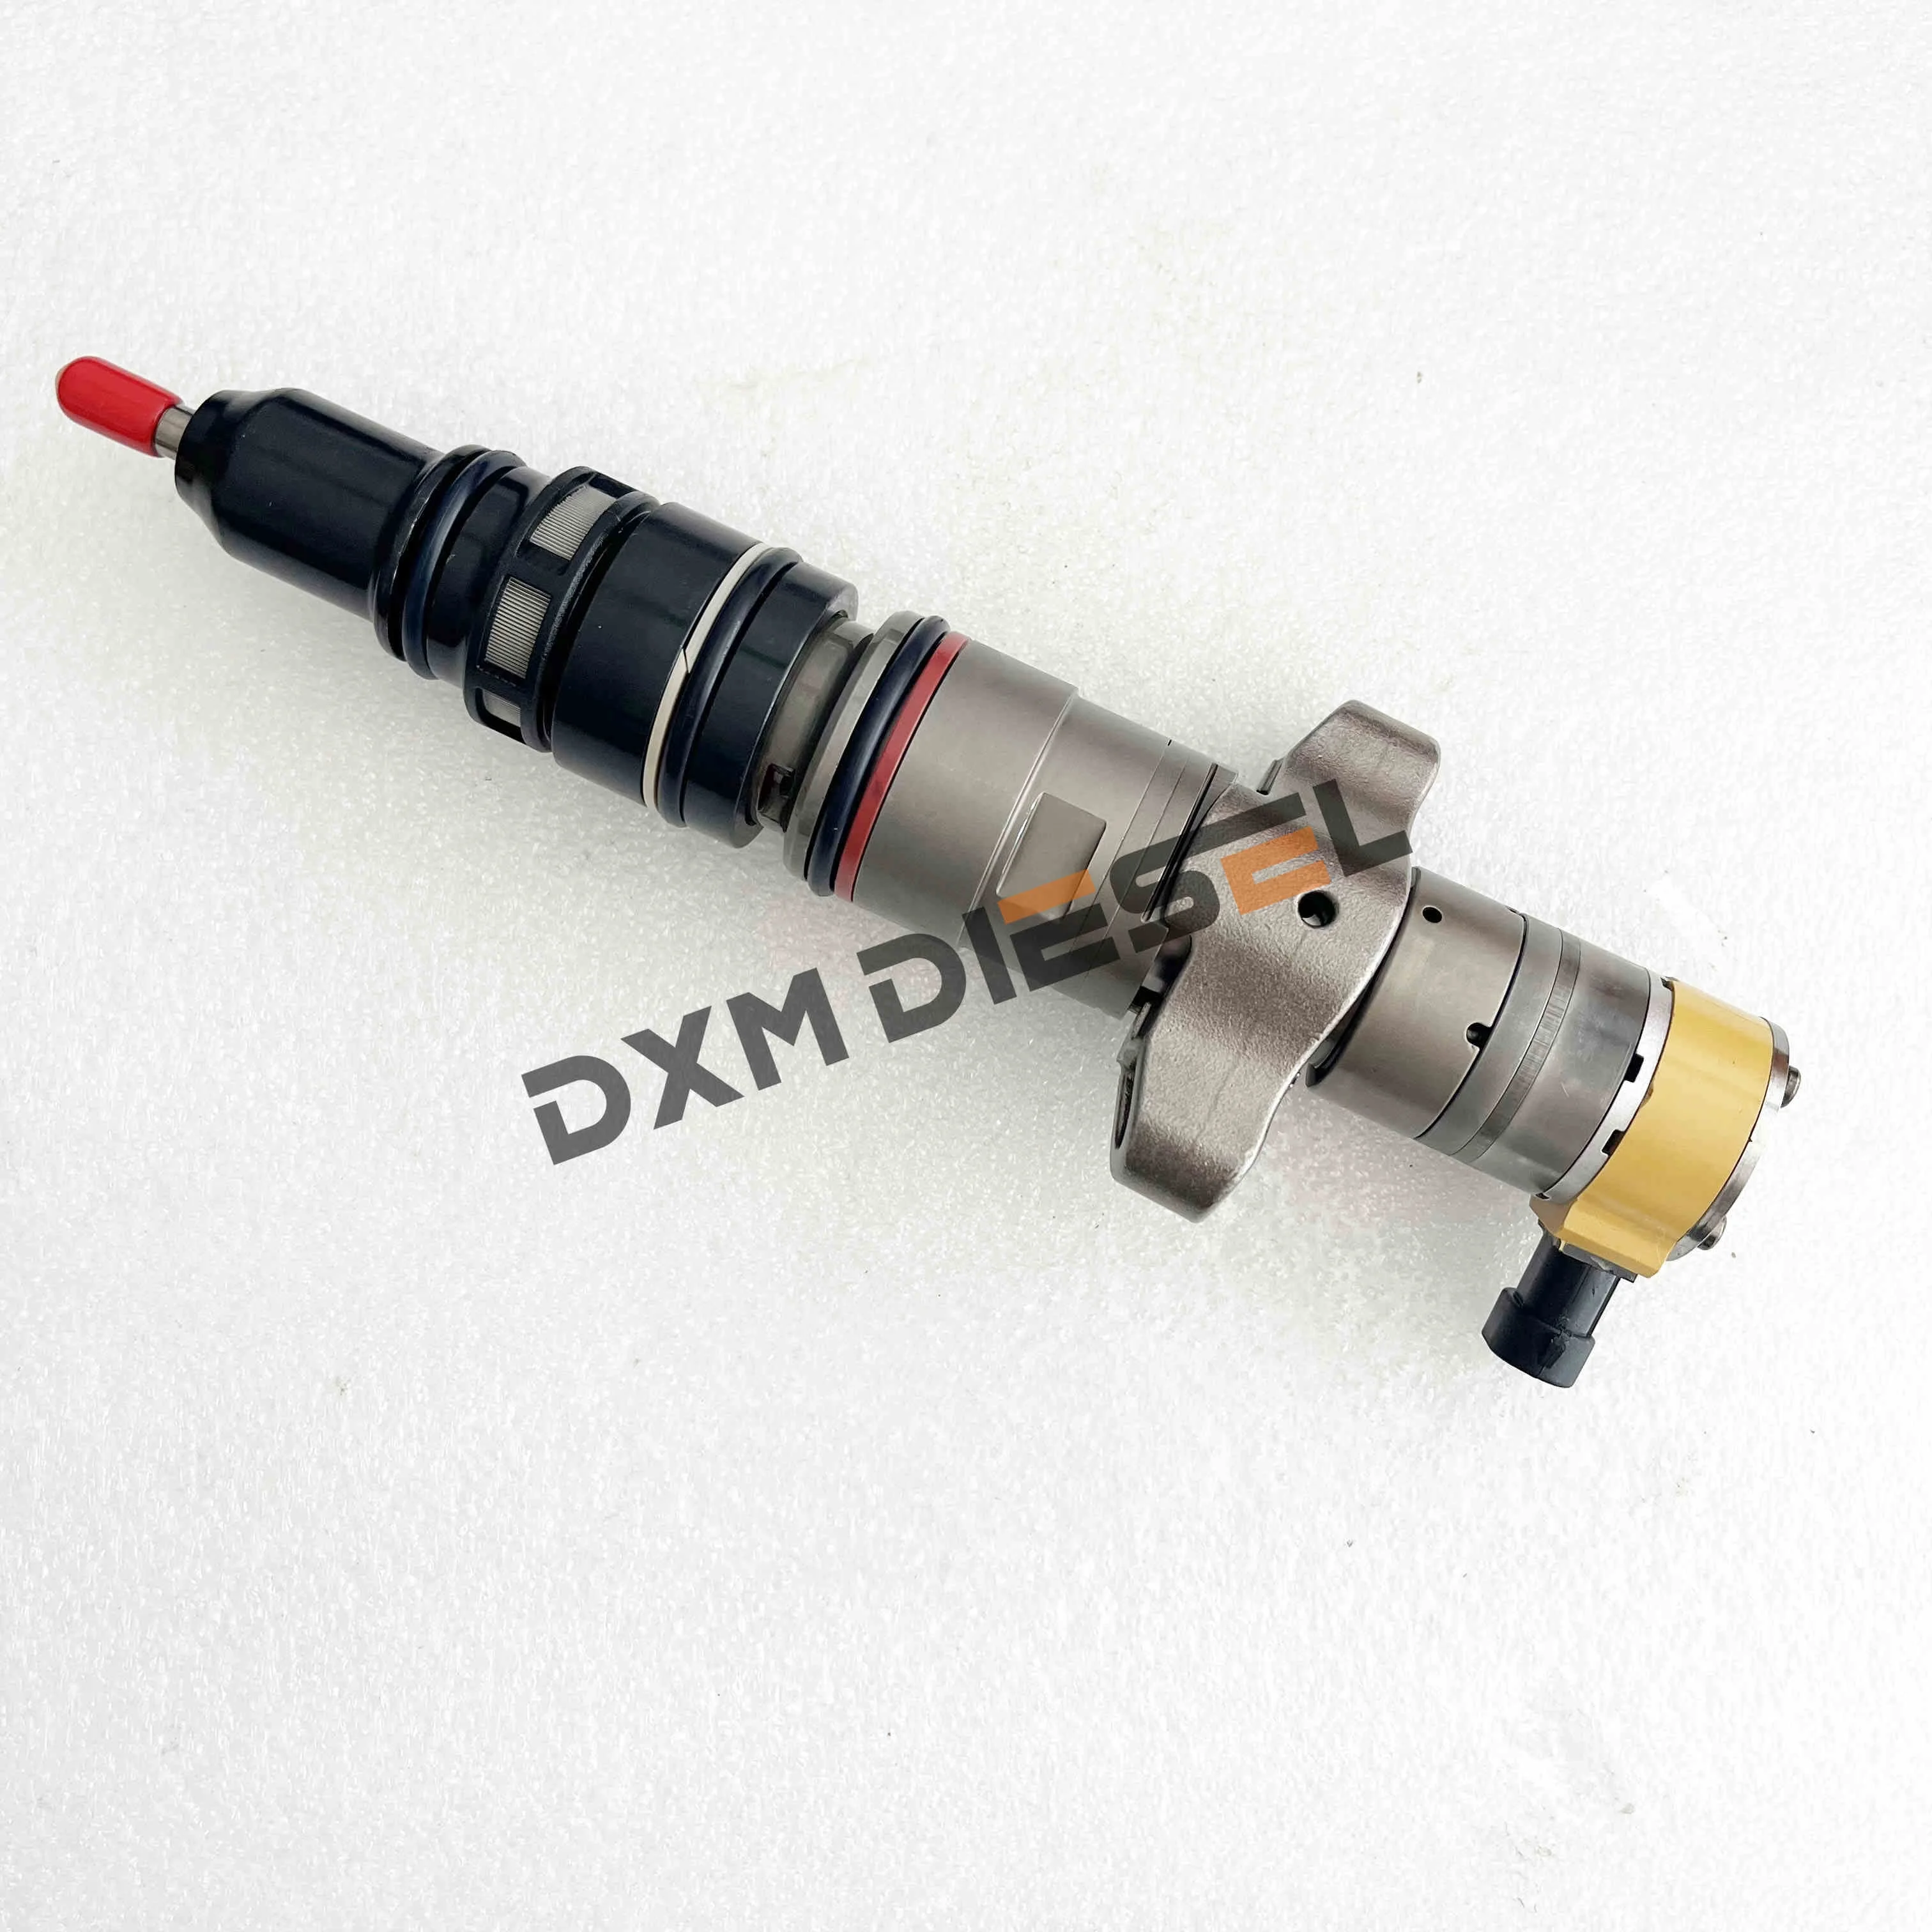 

Форсунка топливного насоса двигателя dxm C7C9 для дизельного двигателя 387-9432 или Форсунка для дизельного топлива 387-9432 3879432